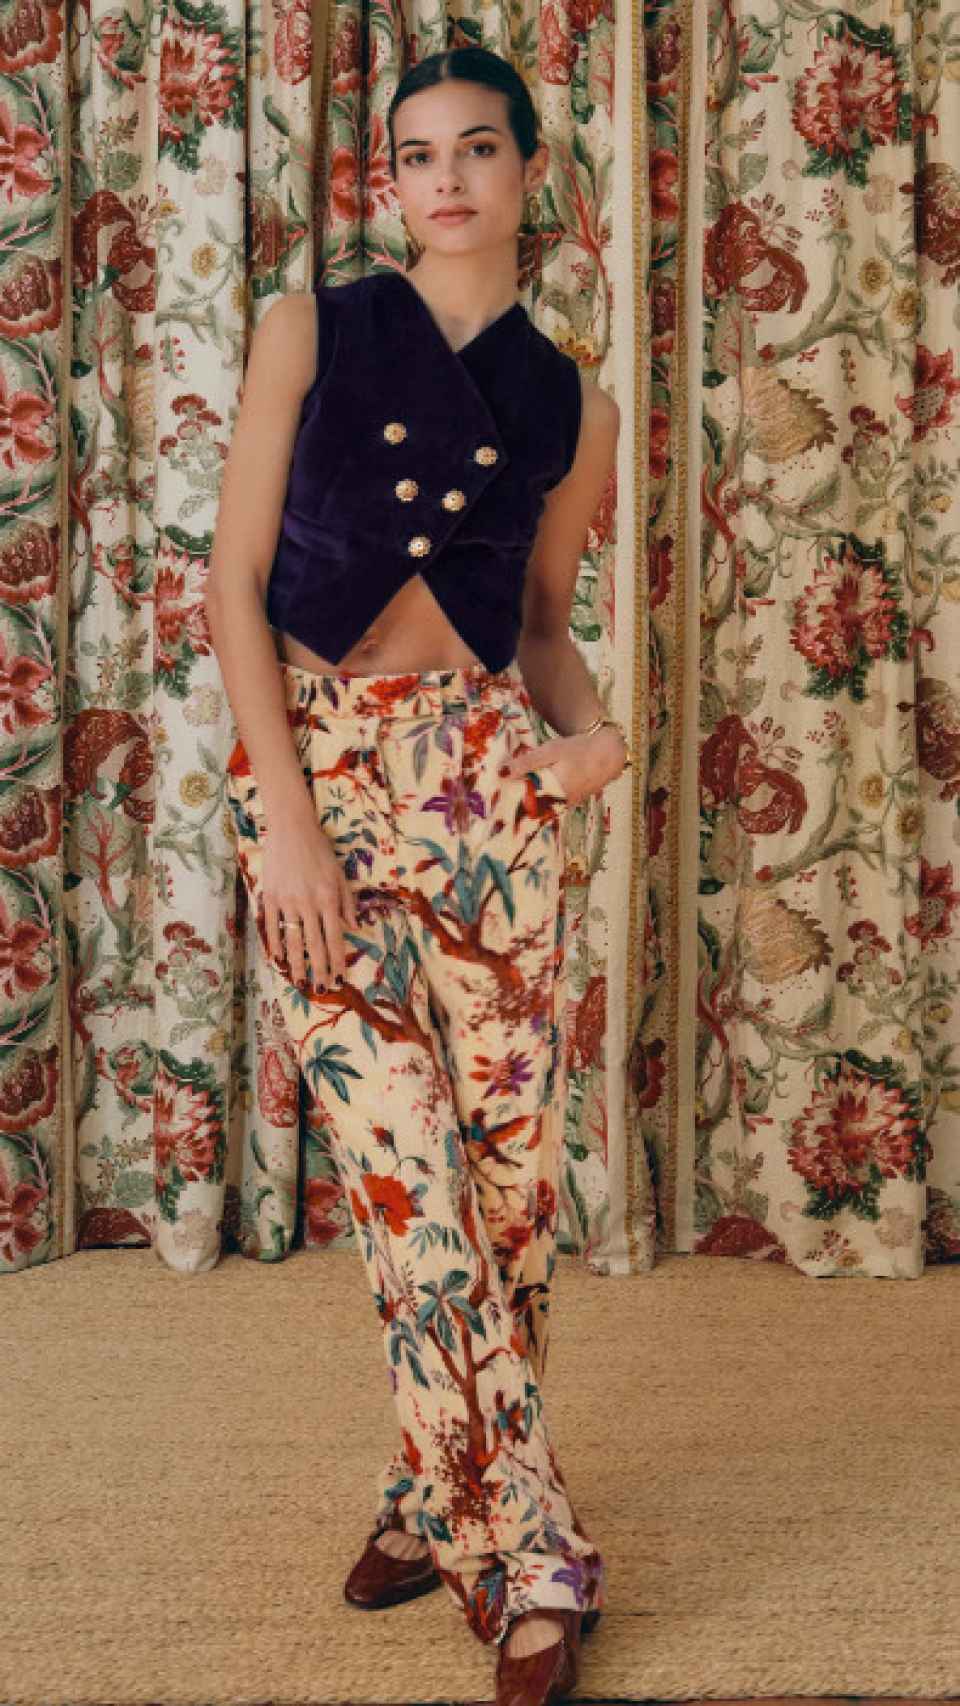 El pantalón de estampado floral de Sassa de Osma.